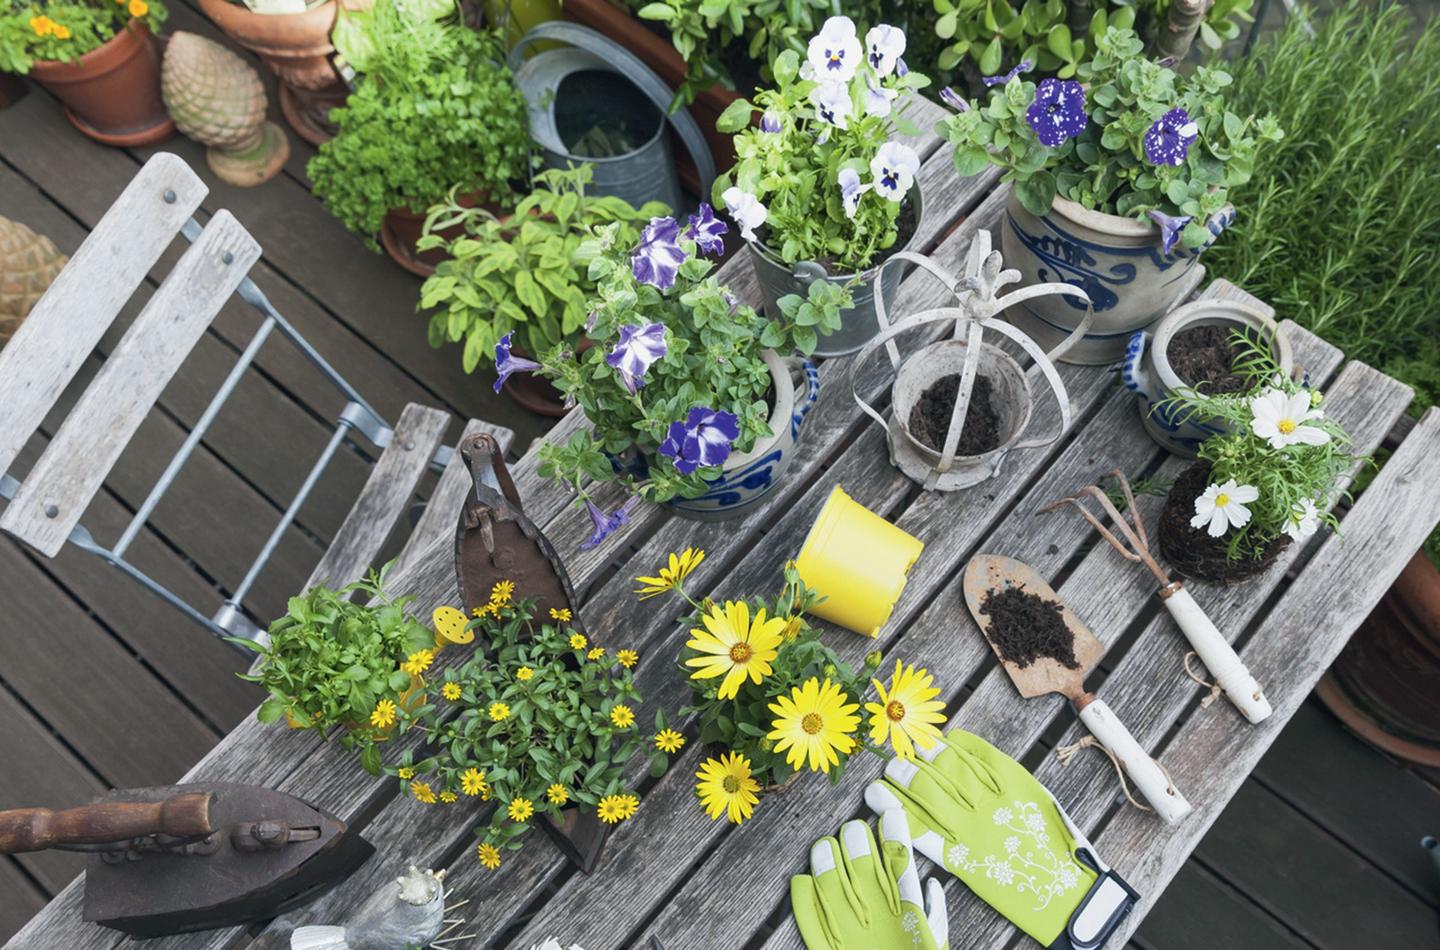 Gartengeräte und Pflanzen auf einem Holztisch. Perfekt für die Gartenarbeit.